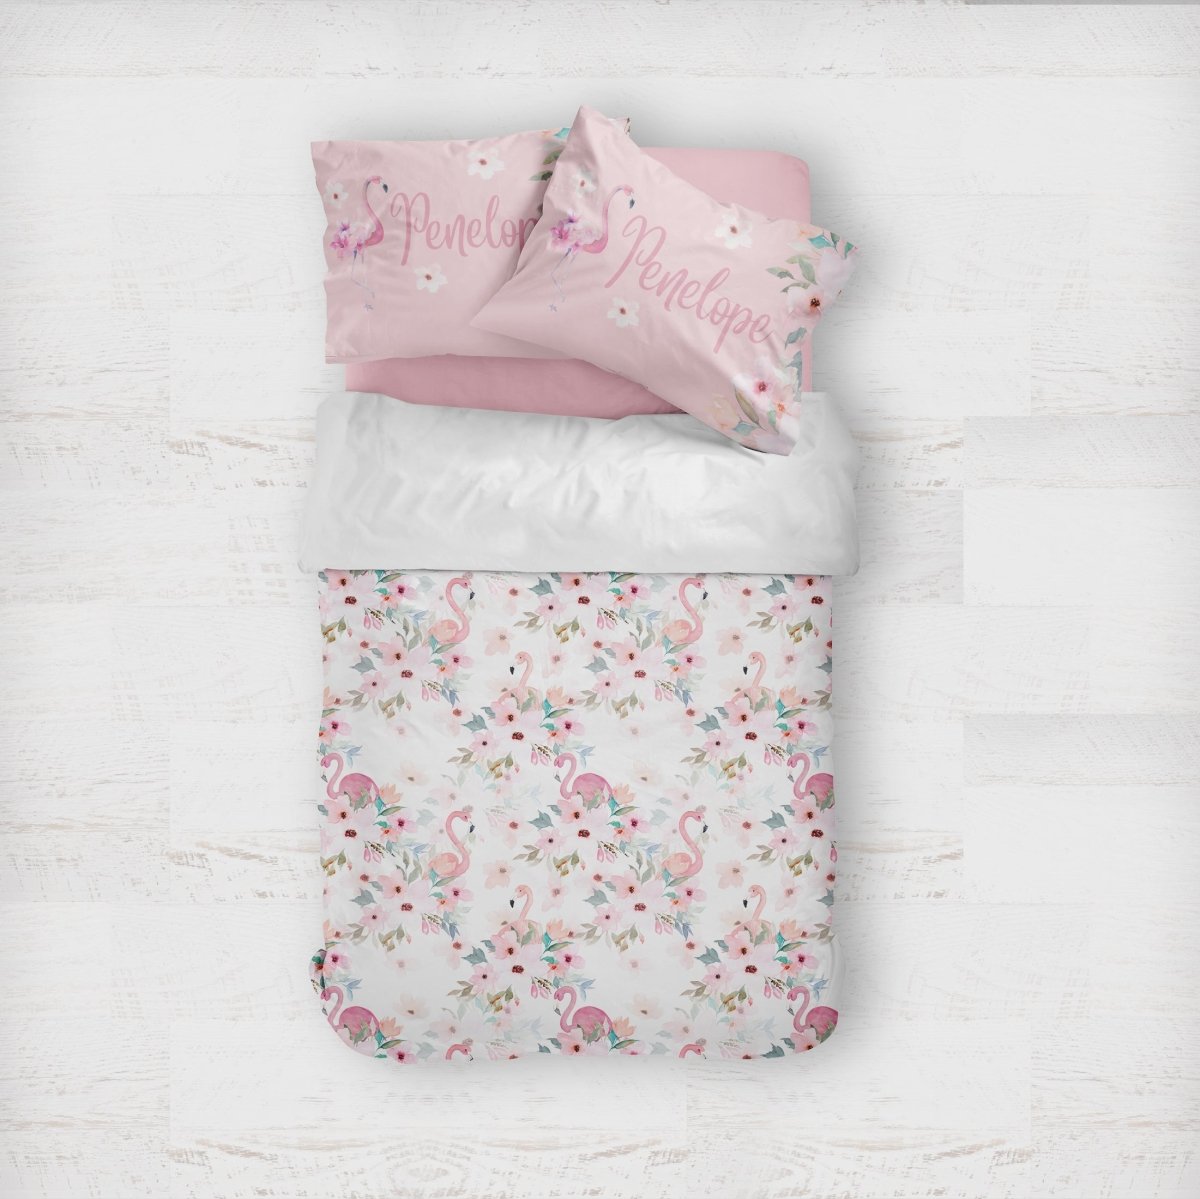 Personalized Flamingo Floral Kids Bedding Set (Comforter or Duvet Cover) - Flamingo Floral, gender_girl, text